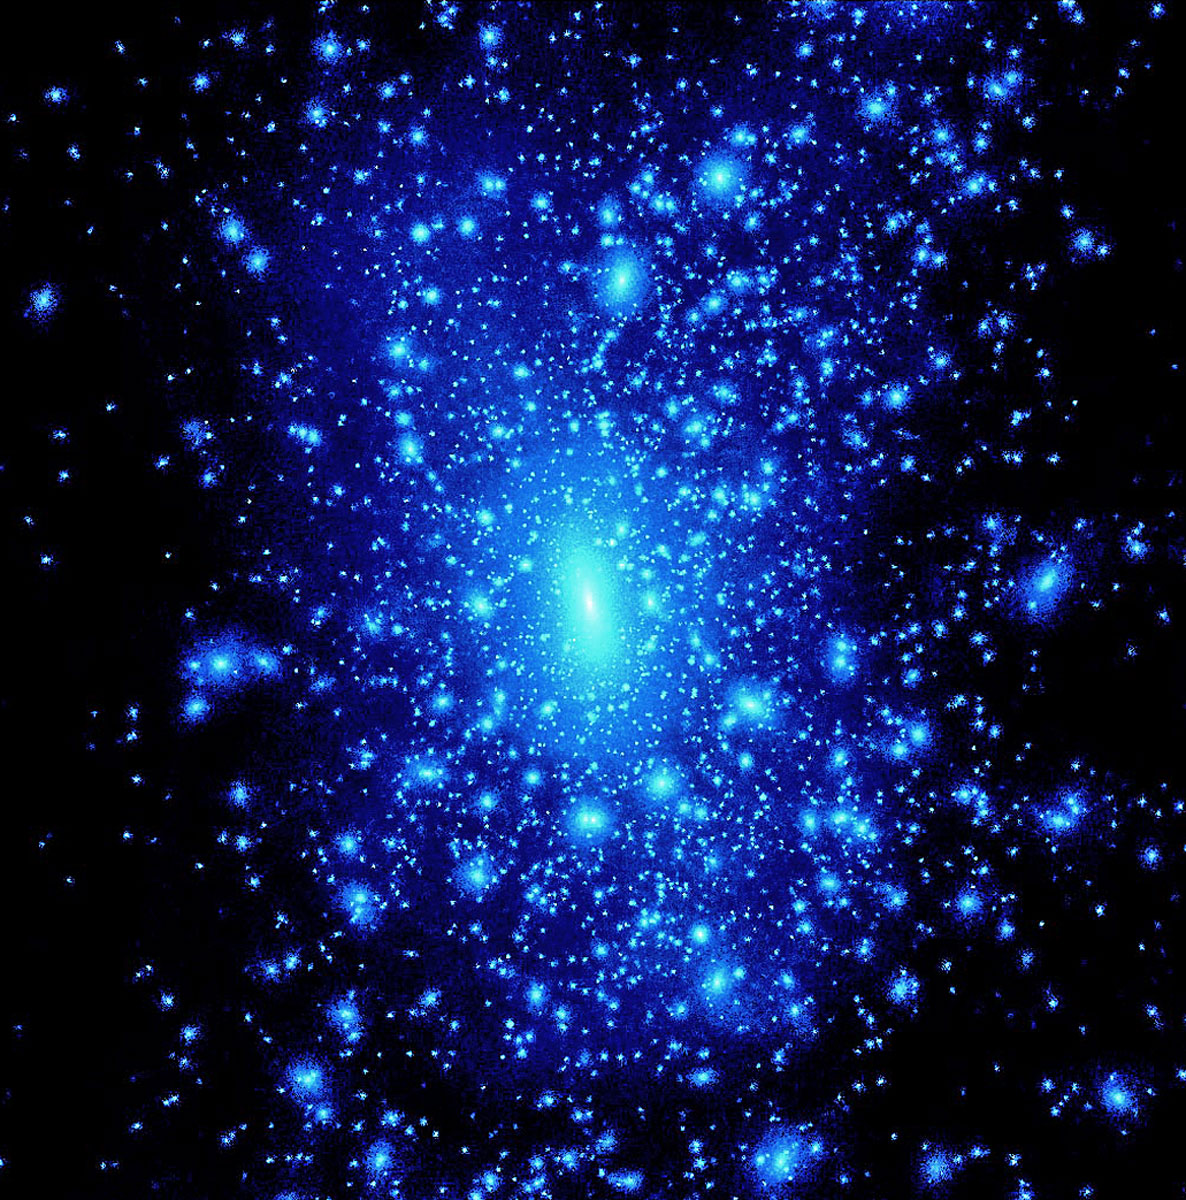 A látható anyag a világegyetemnek csak a 4-5 százalékát alkotja